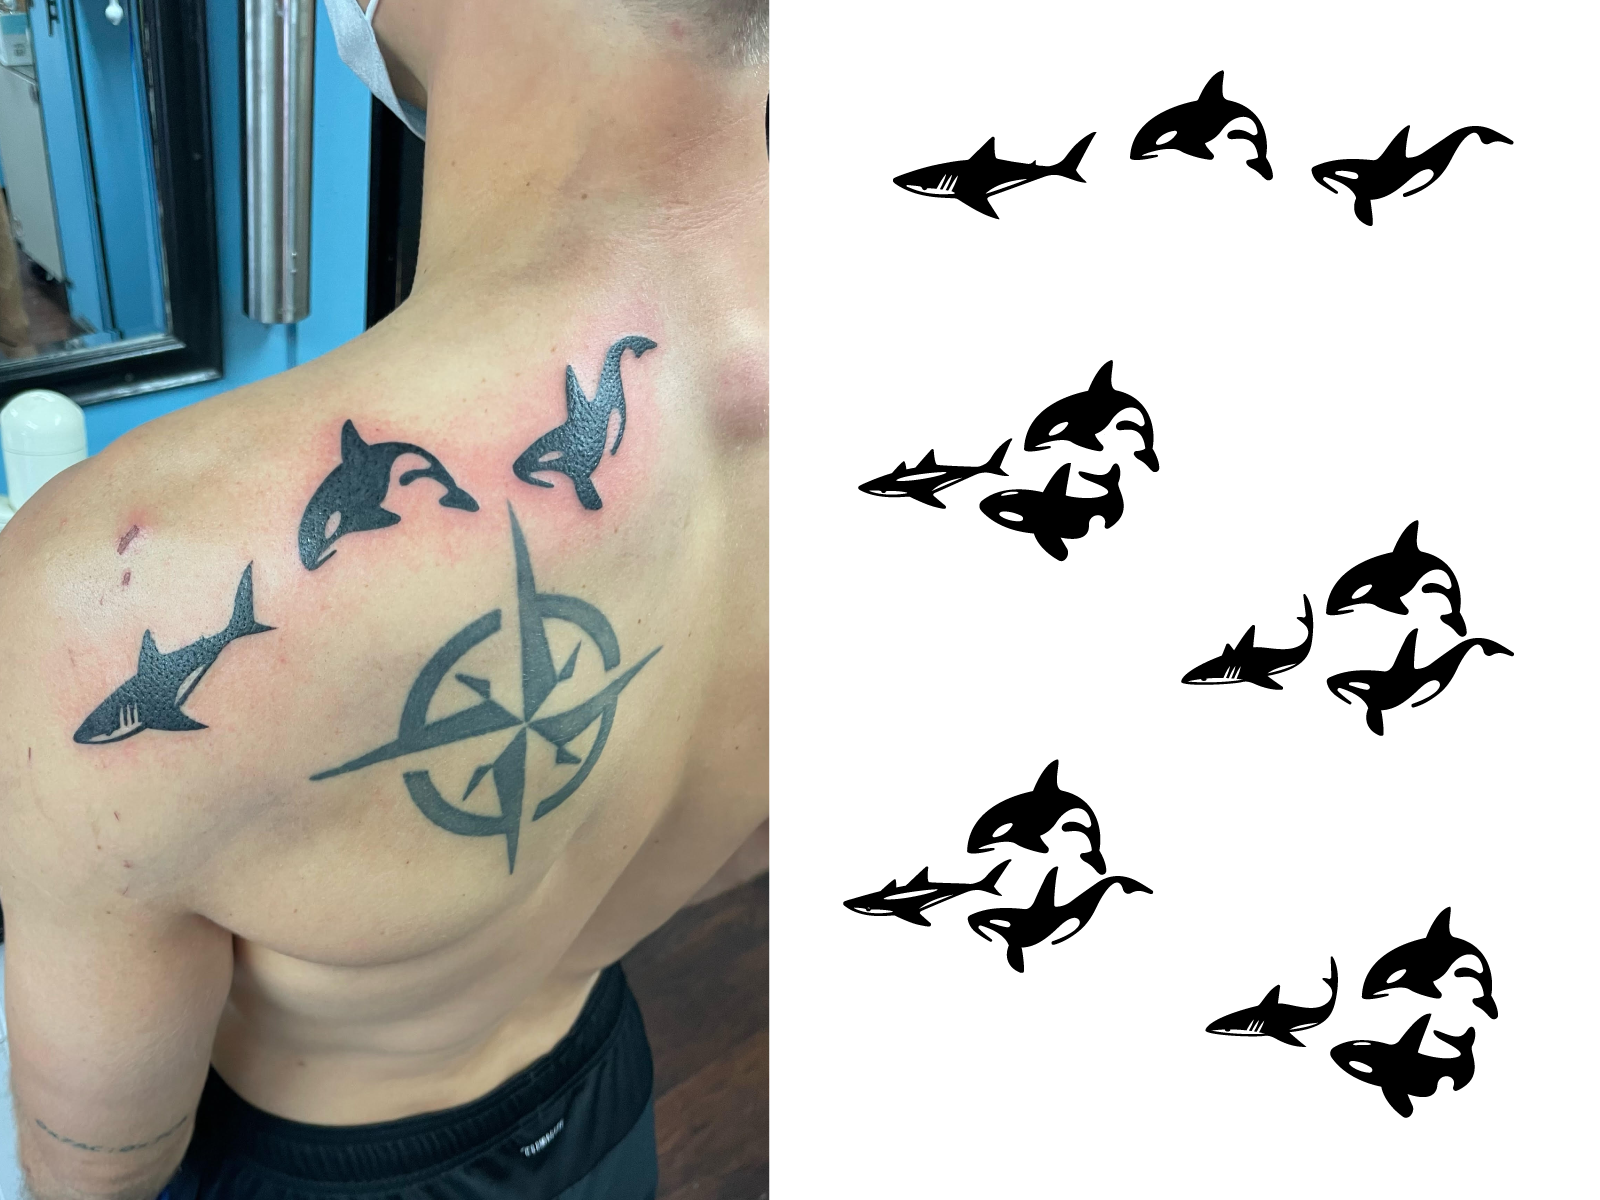 Trinity Tattoo Co on Twitter Shark chest piece by Mike trinitytattoovb  trilogytattooco tattoos tattoo ink bng b httpstconBoIOUQJRL  httpstcoGXPrM9JbgG  Twitter